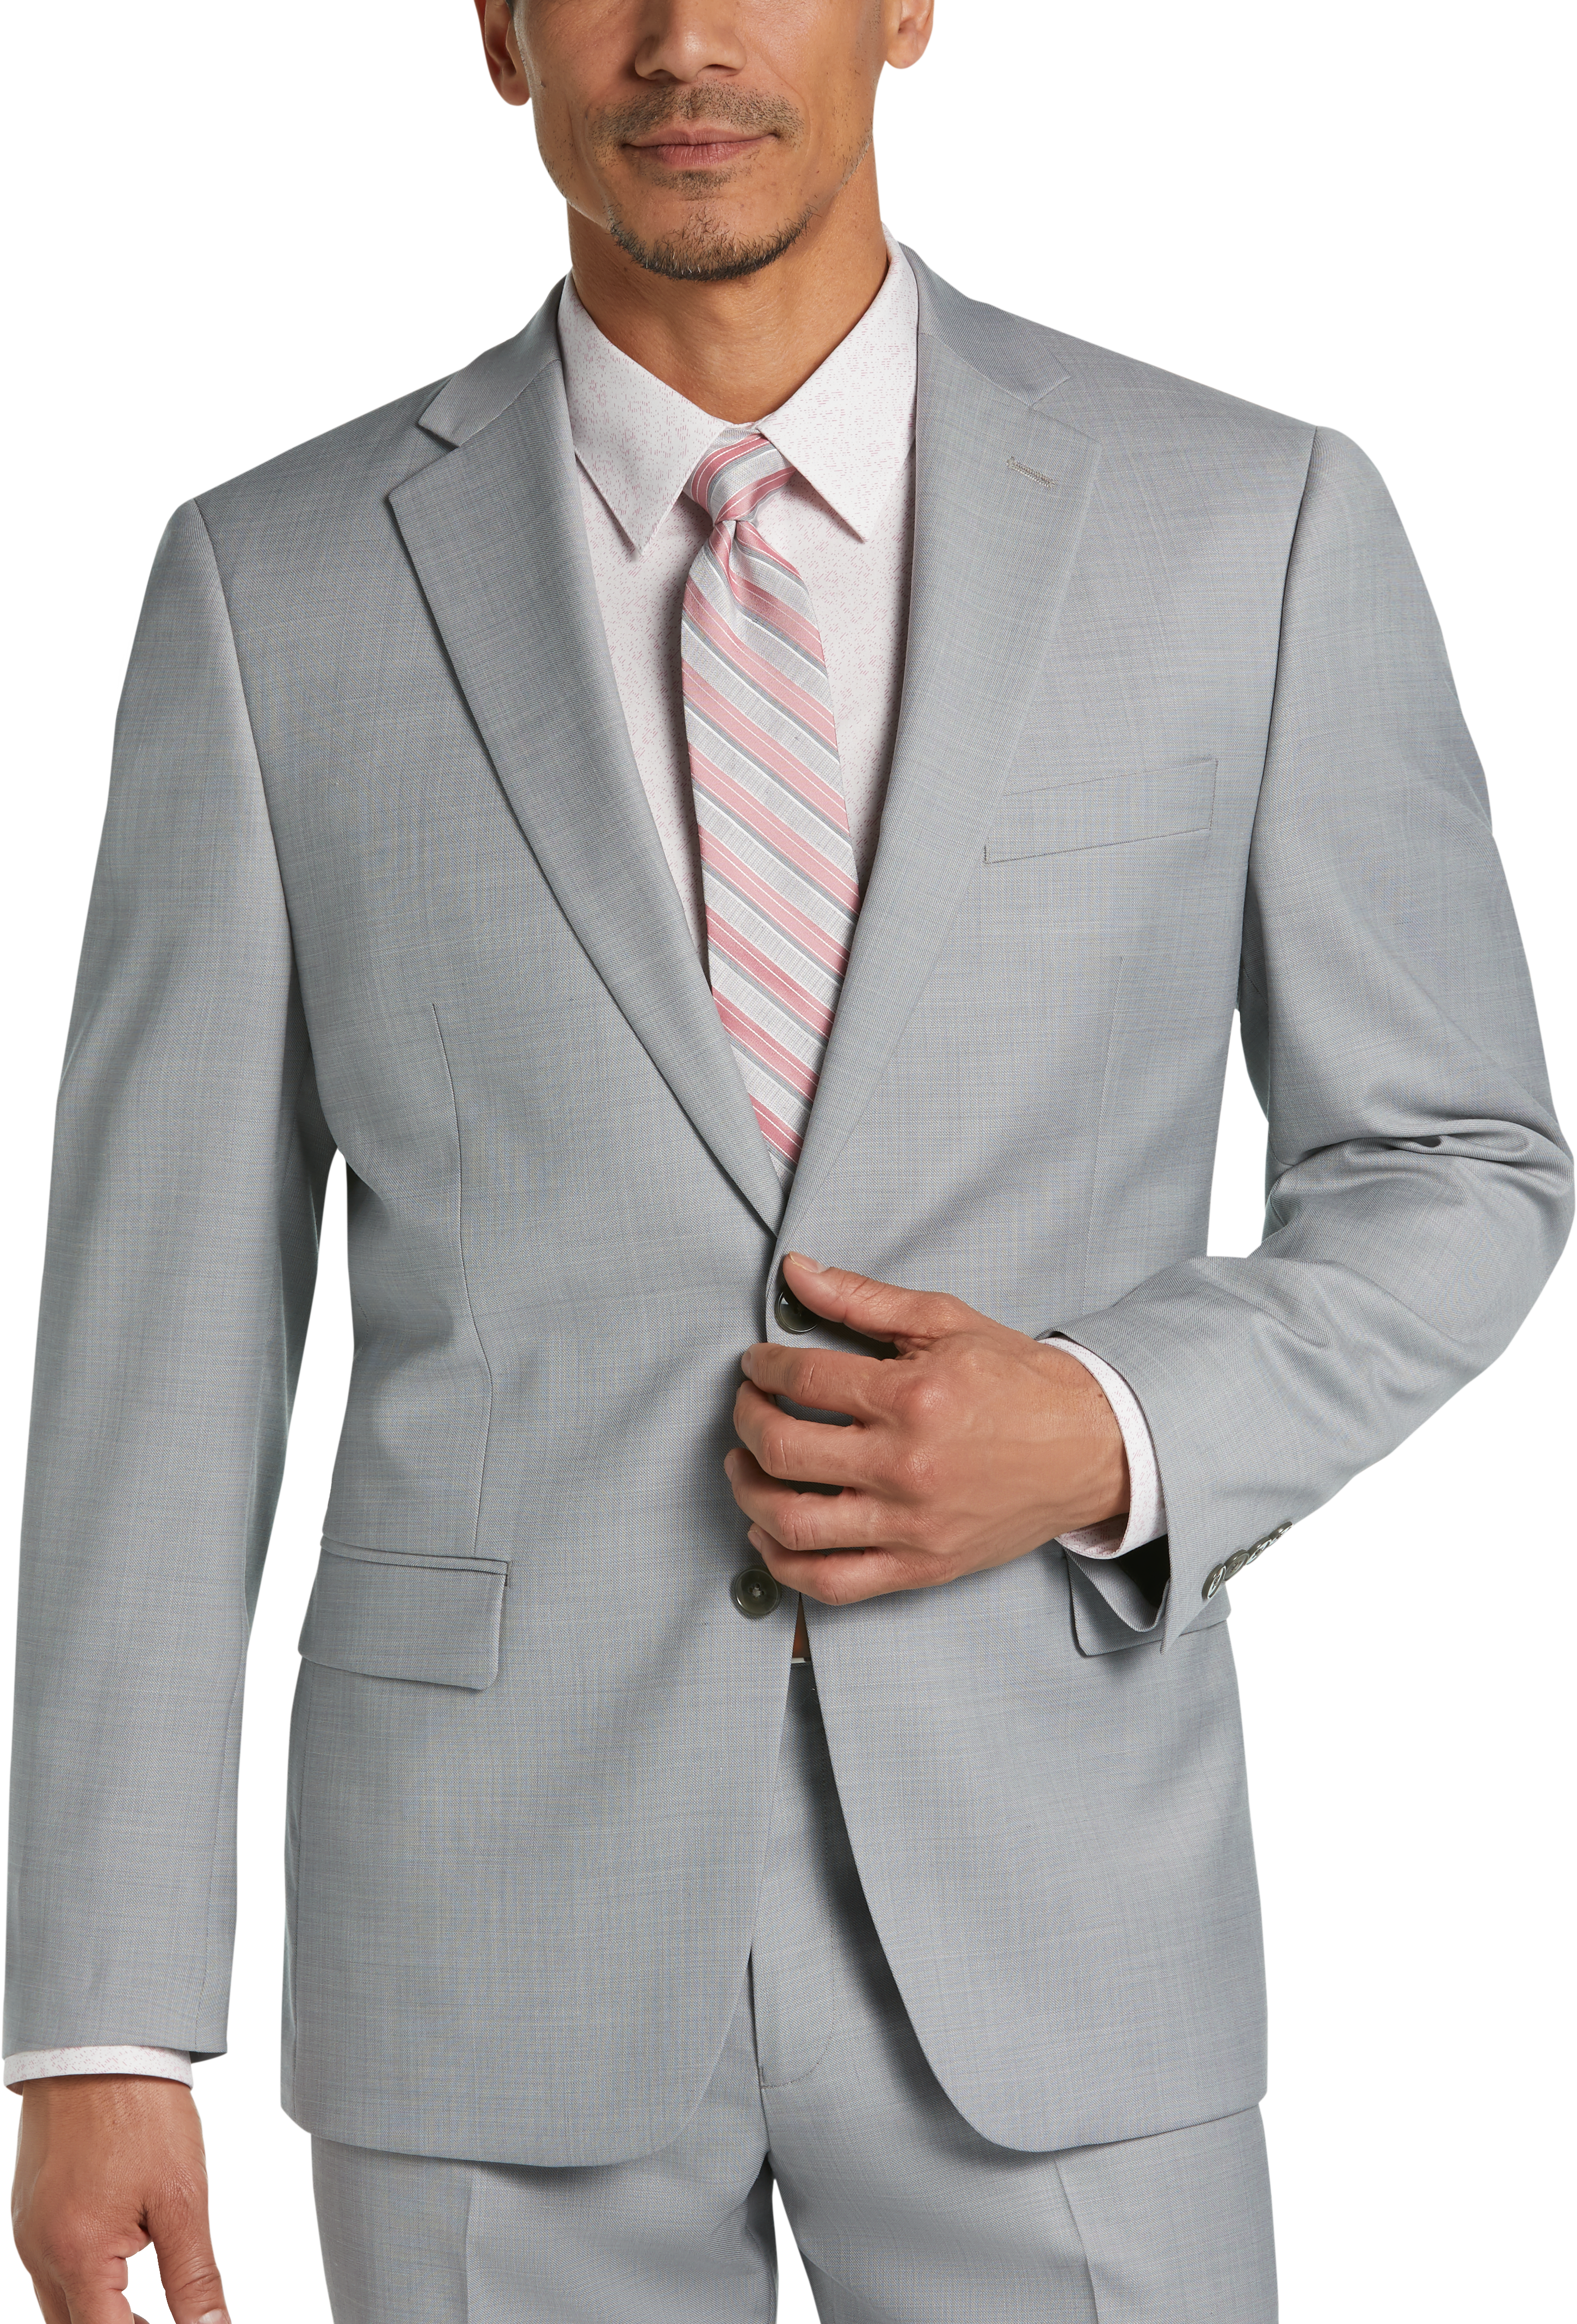 calvin klein modern fit suit